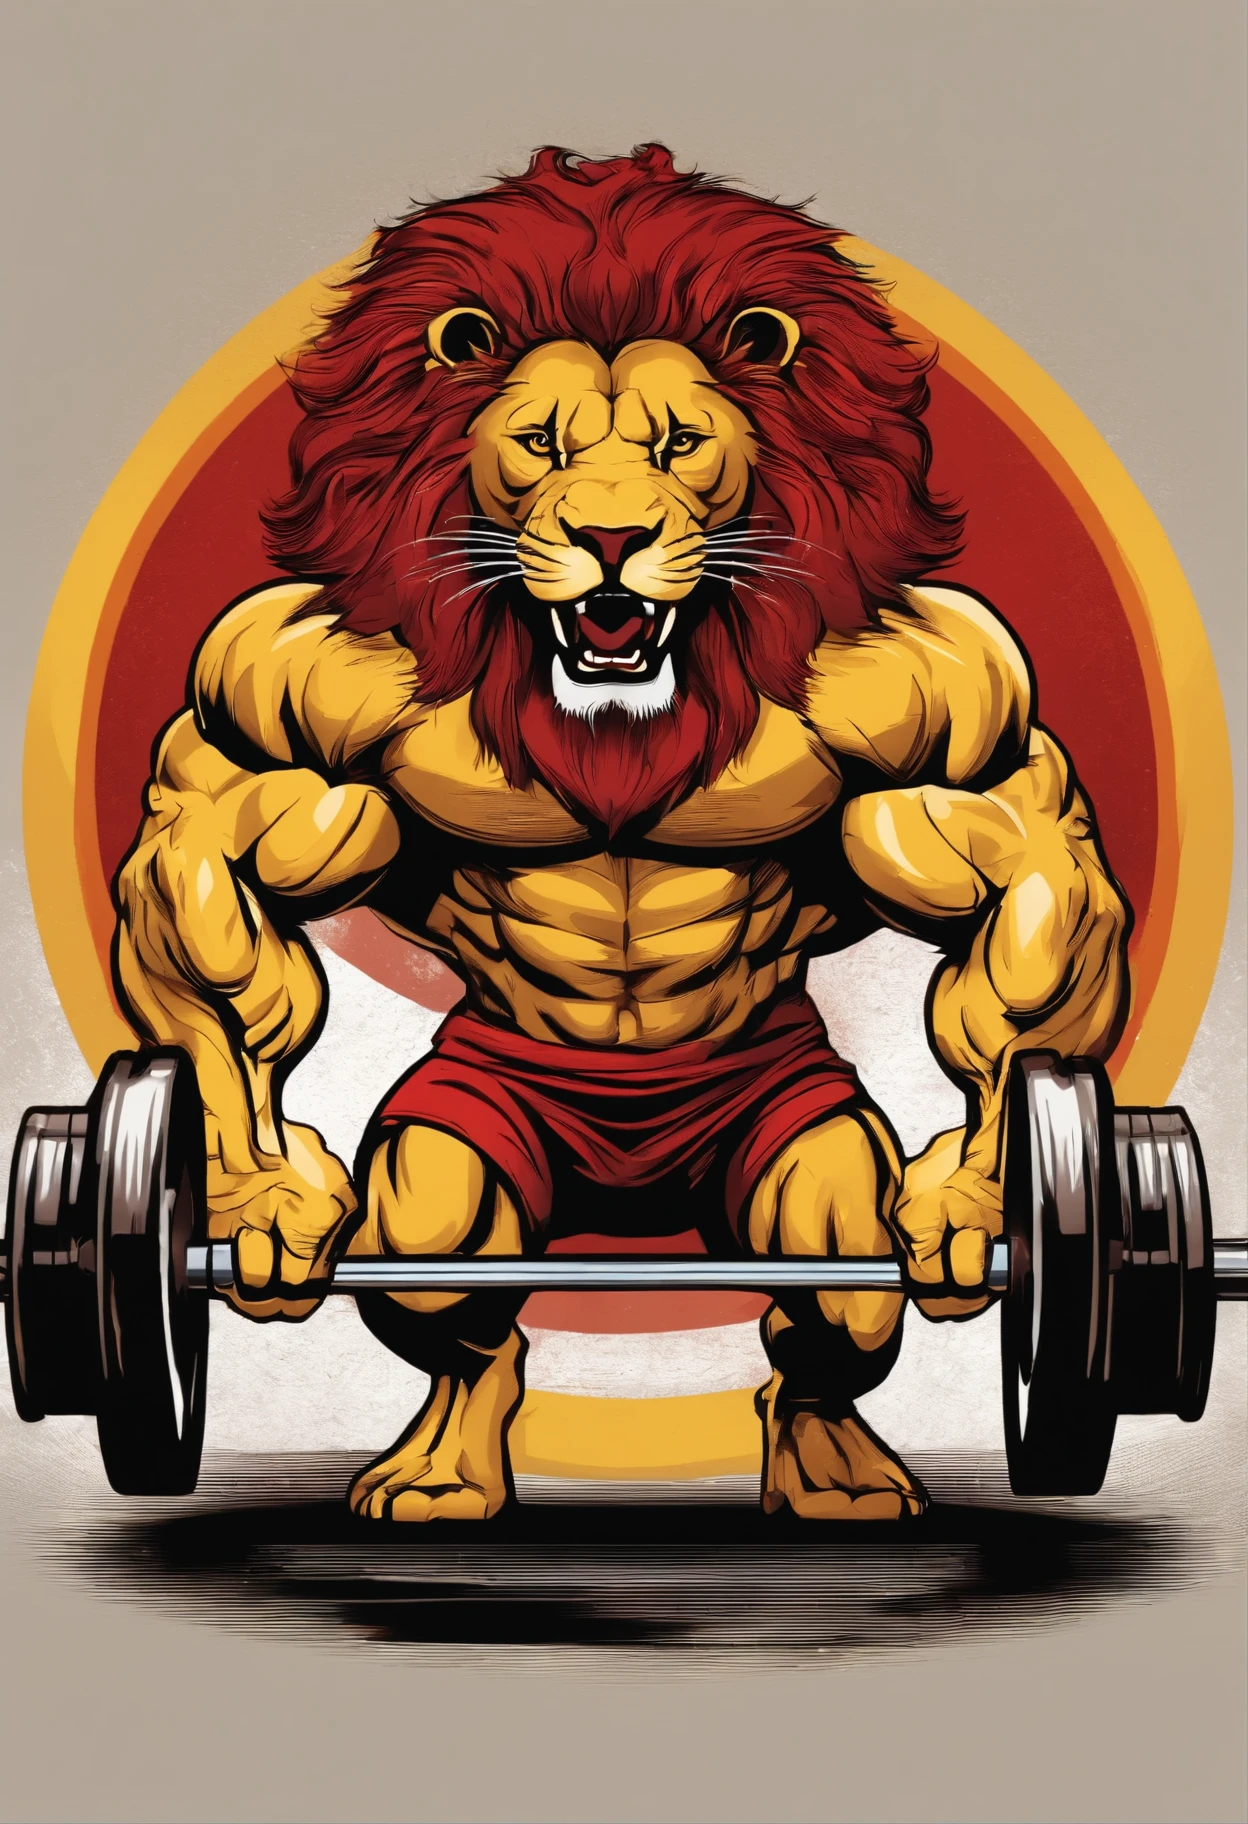 健身房服務,為我創建一個徽標:嚴肅的獅子舉起槓鈴,風格:紅色和黃色漸變